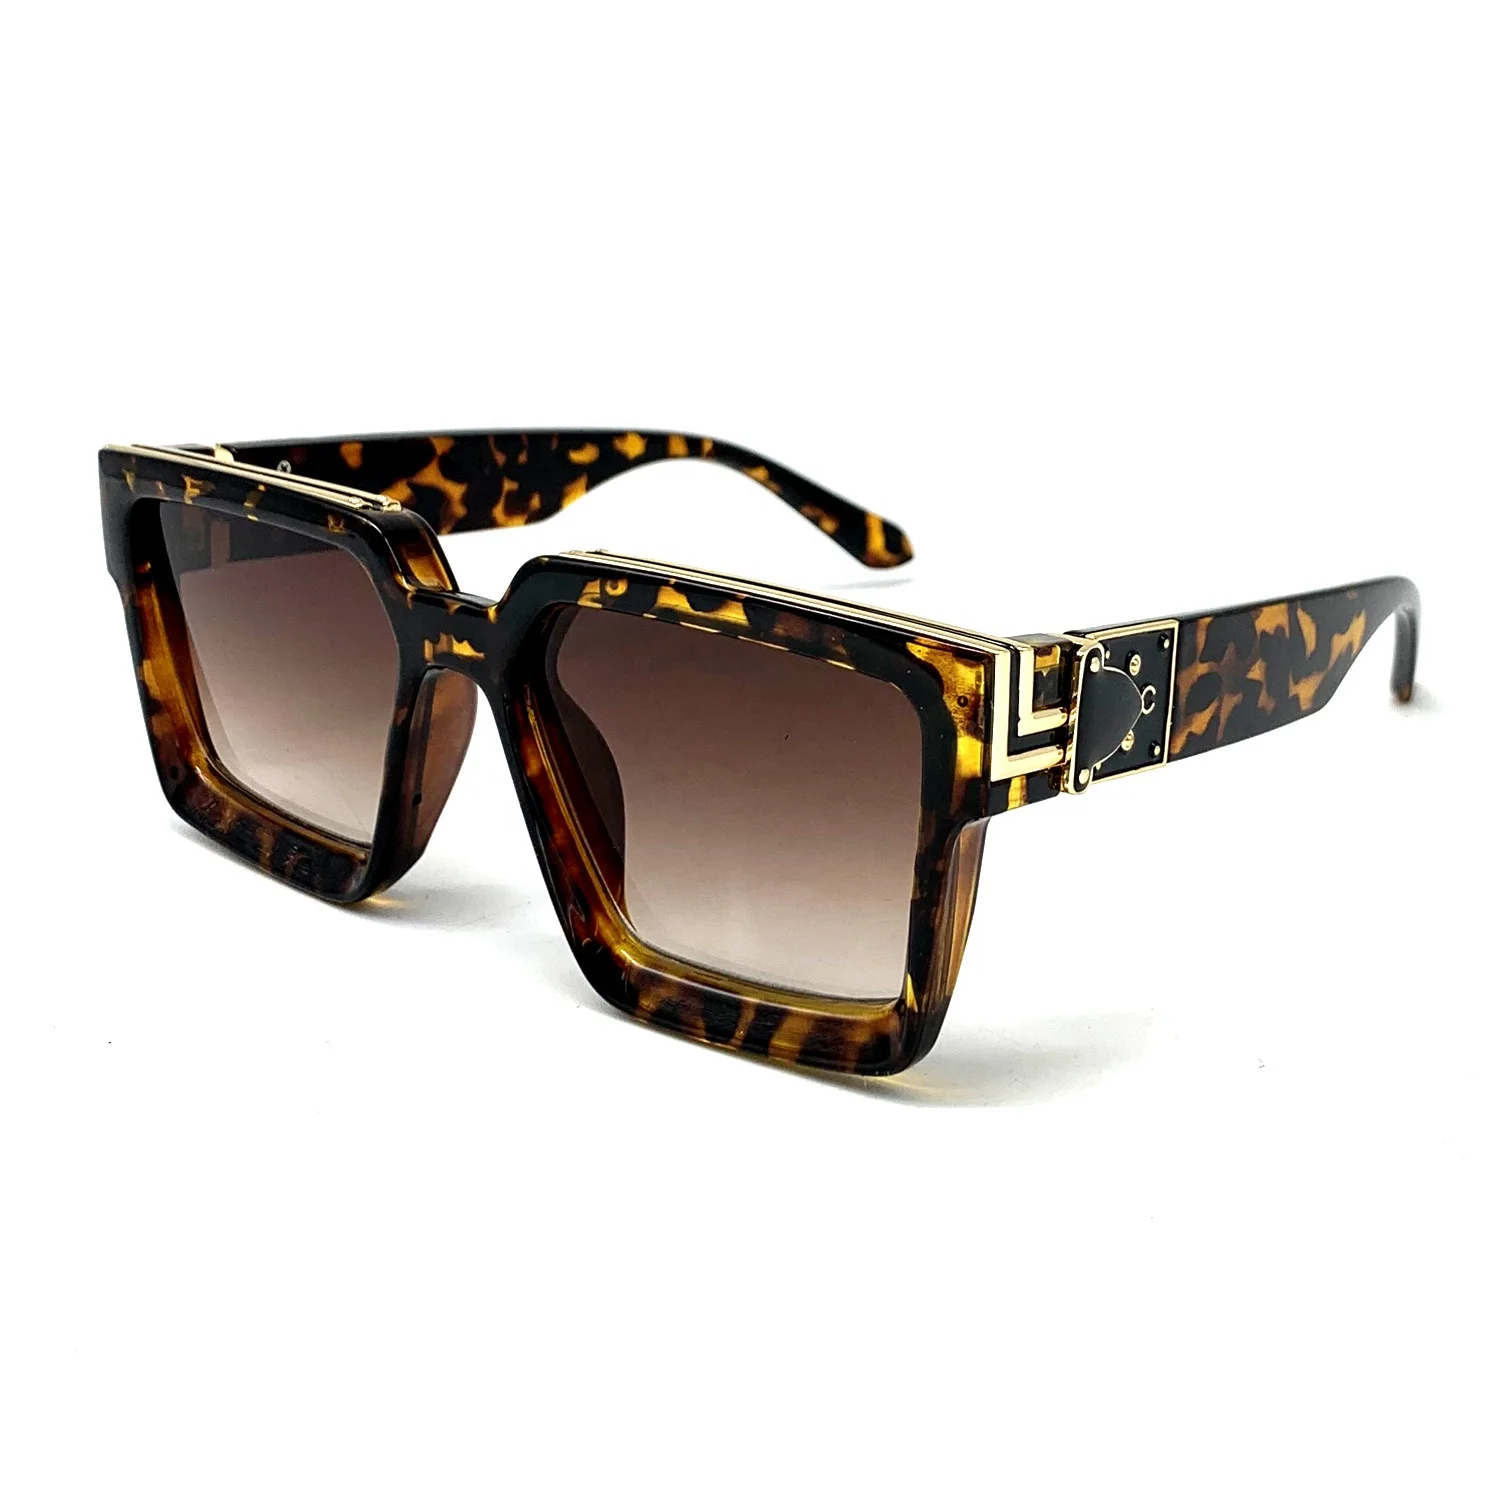 

2020 Trendy Sun Glasses Italy Design Retro Steampunk Square Futuristic Men Women Sunglasses, Customized color